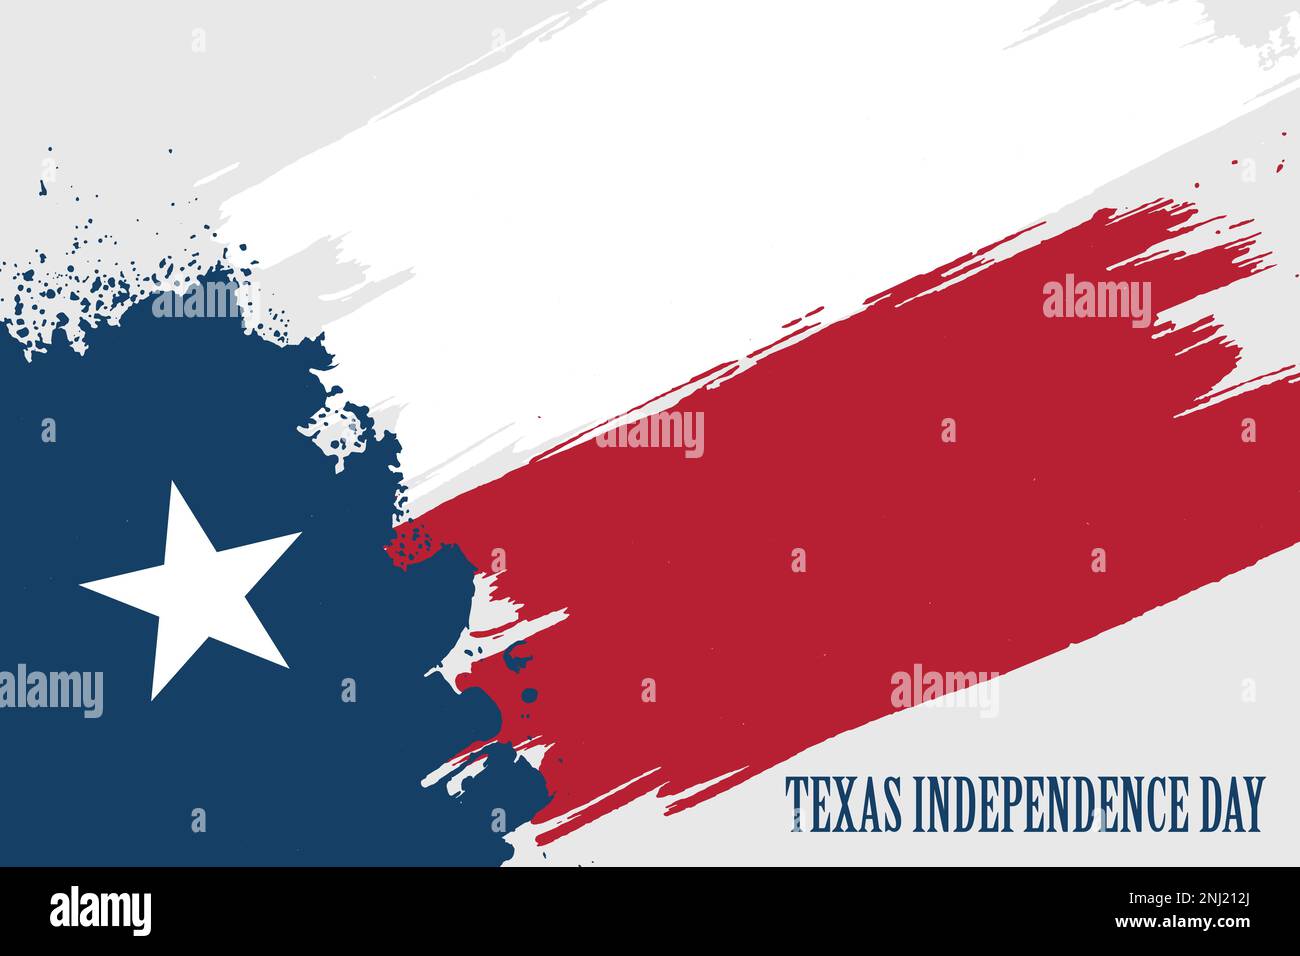 Texas Independence Day, Grunge-Flagge von Texas - Lone Star, moderne Vektordarstellung im Hintergrund Stock Vektor